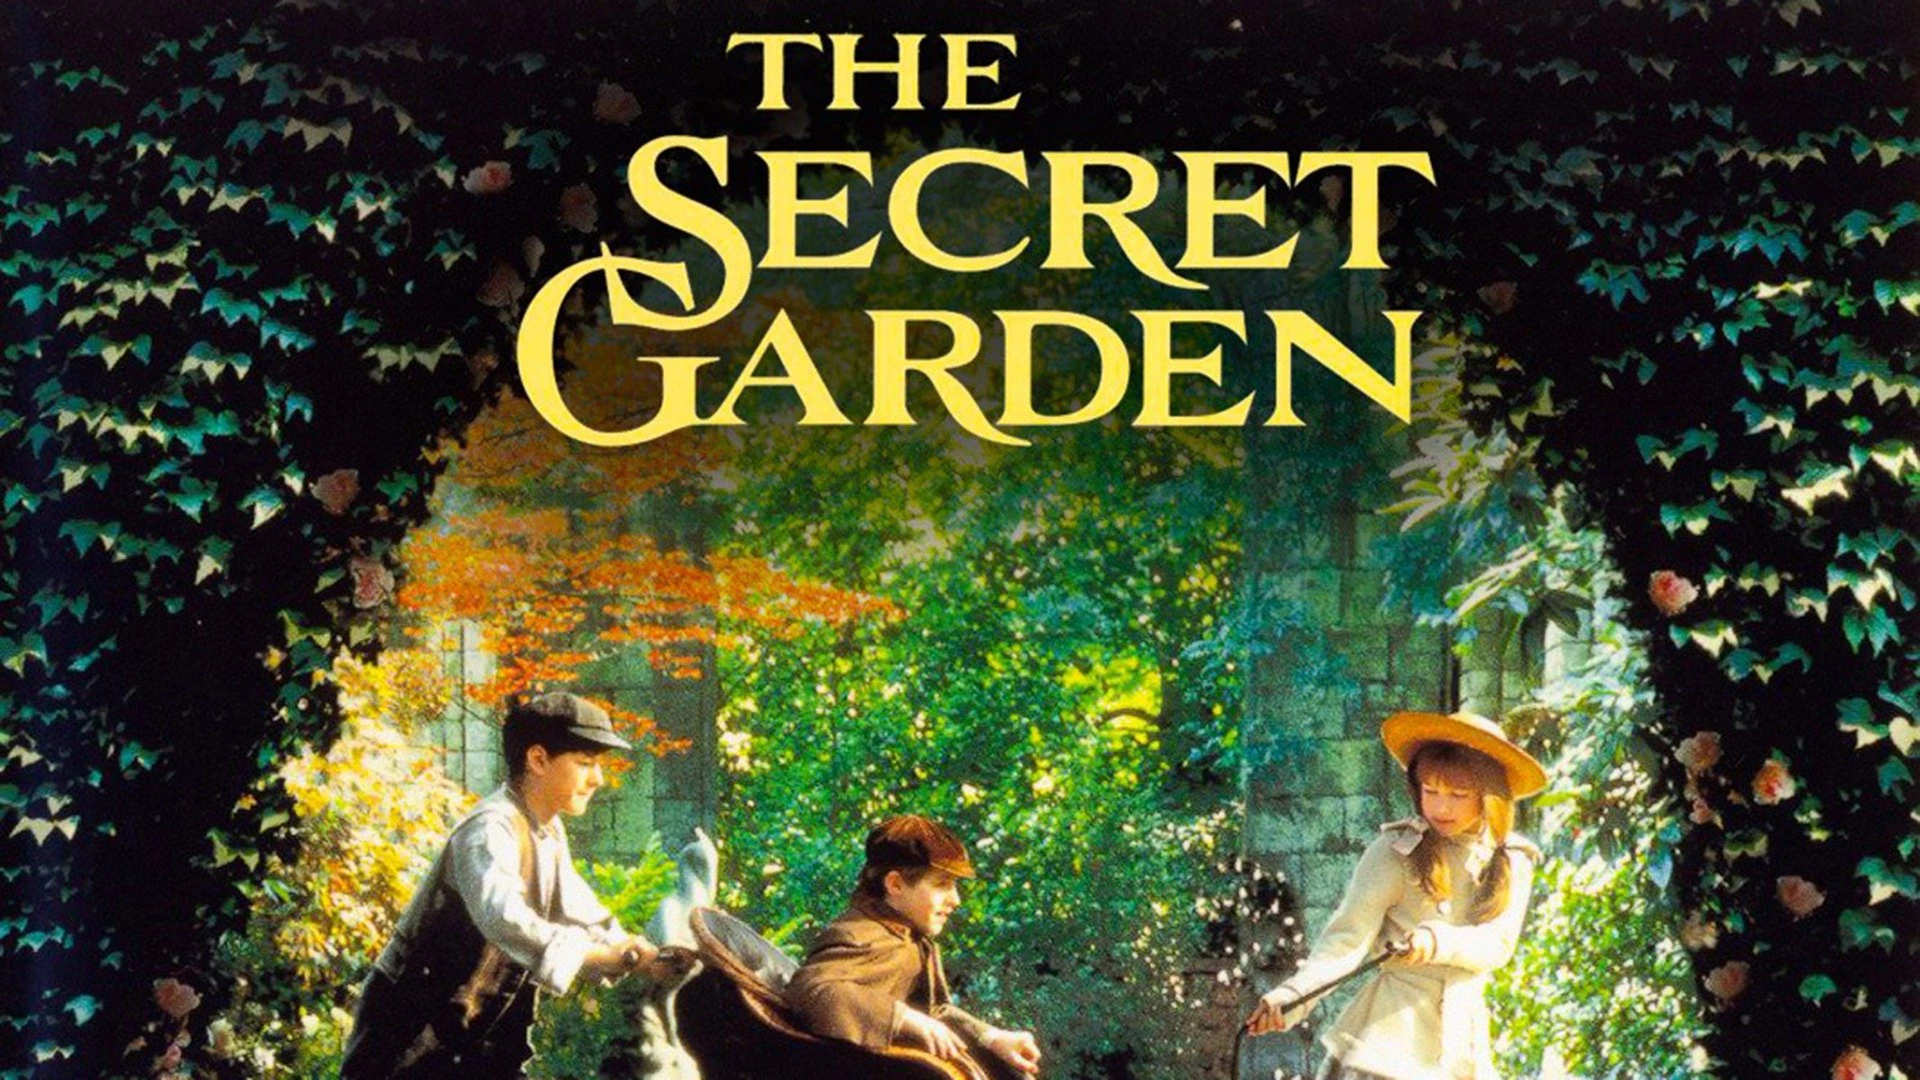 movies like Little Women - The Secret Garden (1993)